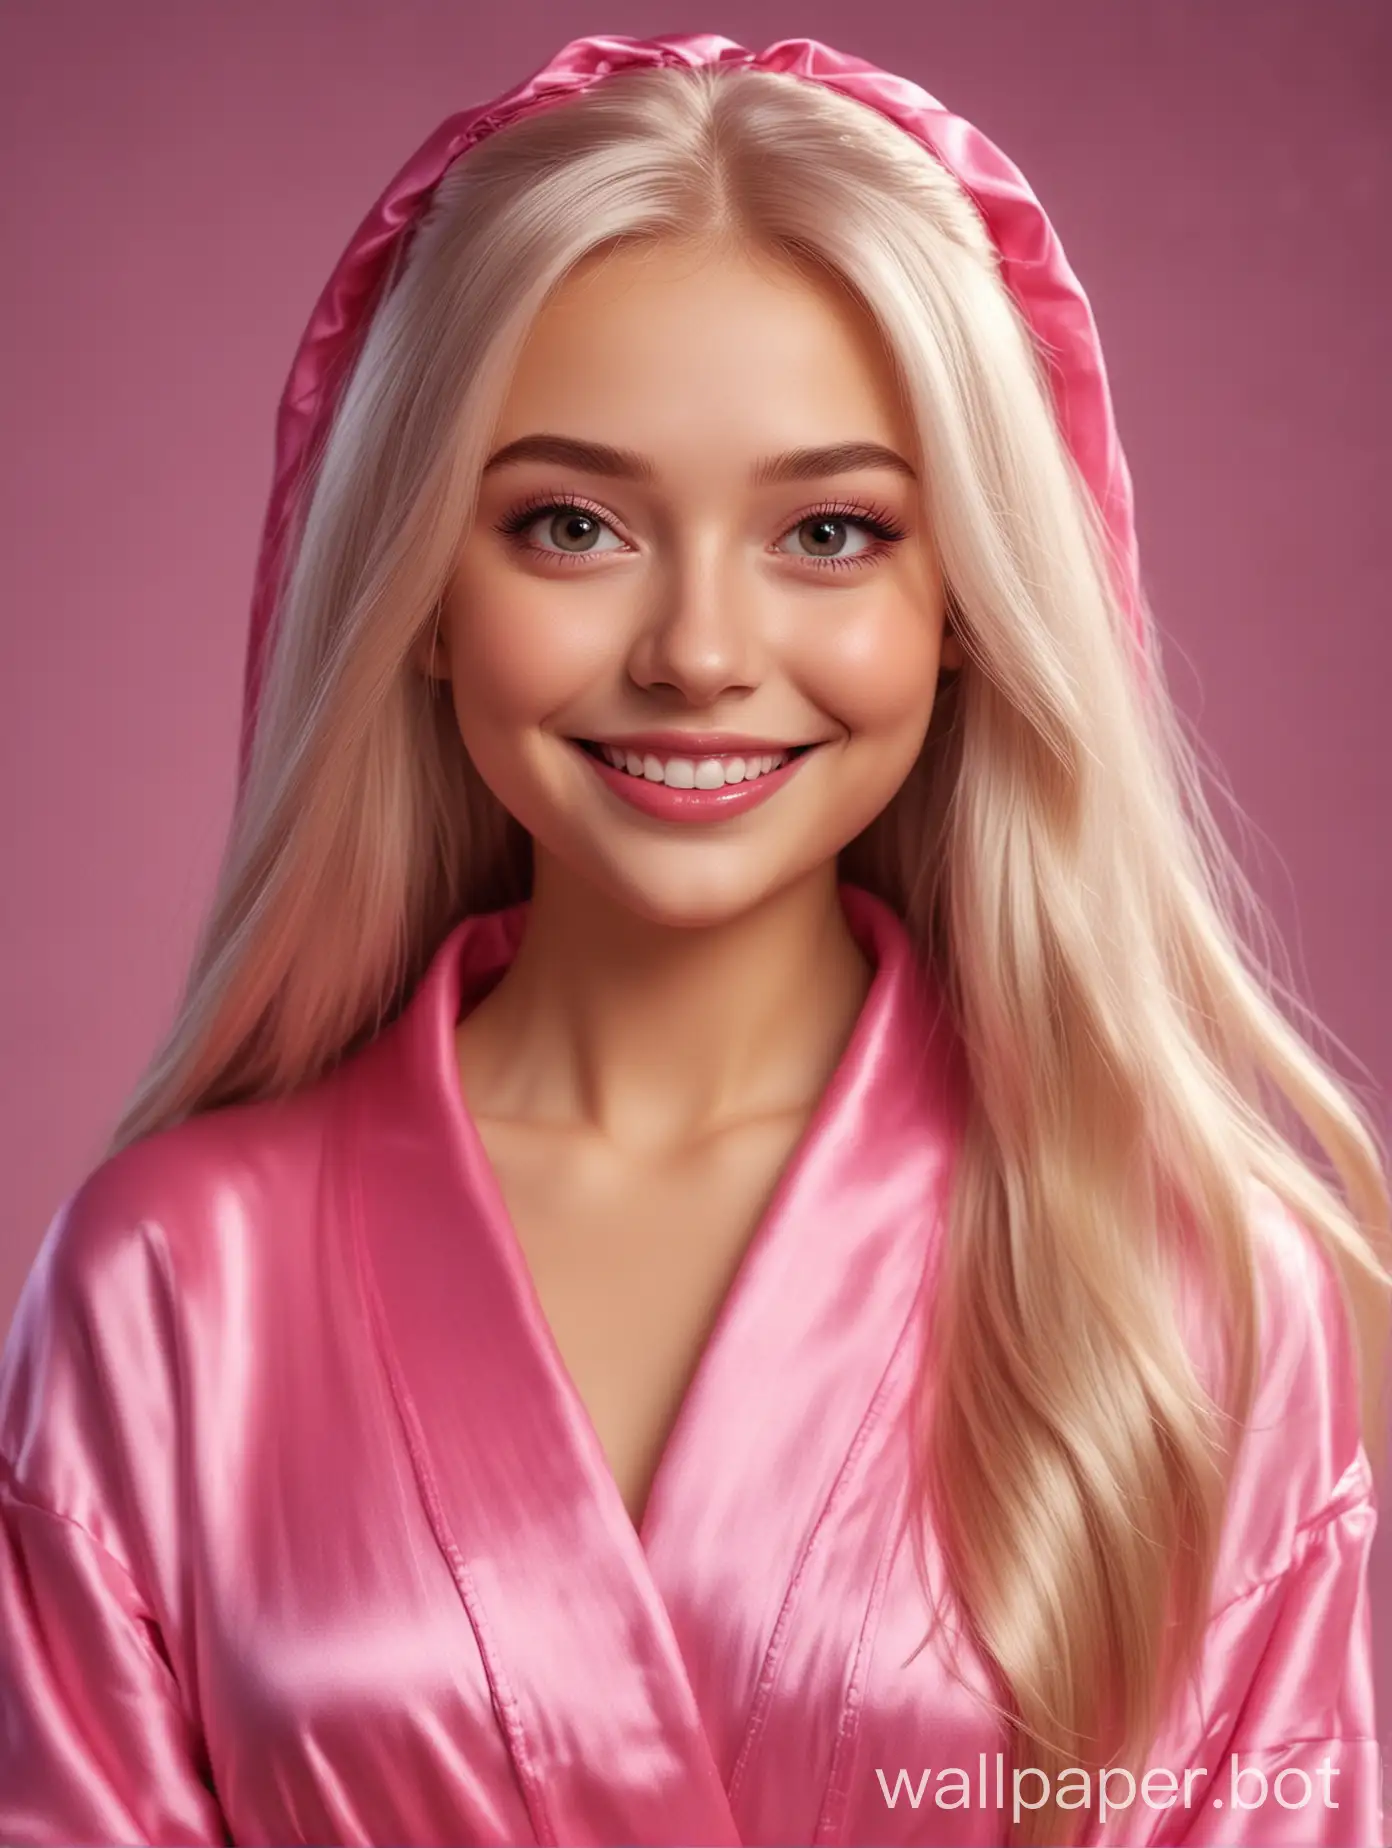 Реалистичная милашка русская сестрица Аленушка в стиле Дисней улыбается с длинными прямыми шелковистыми волосами в шелковом халате цвета розовая фуксия